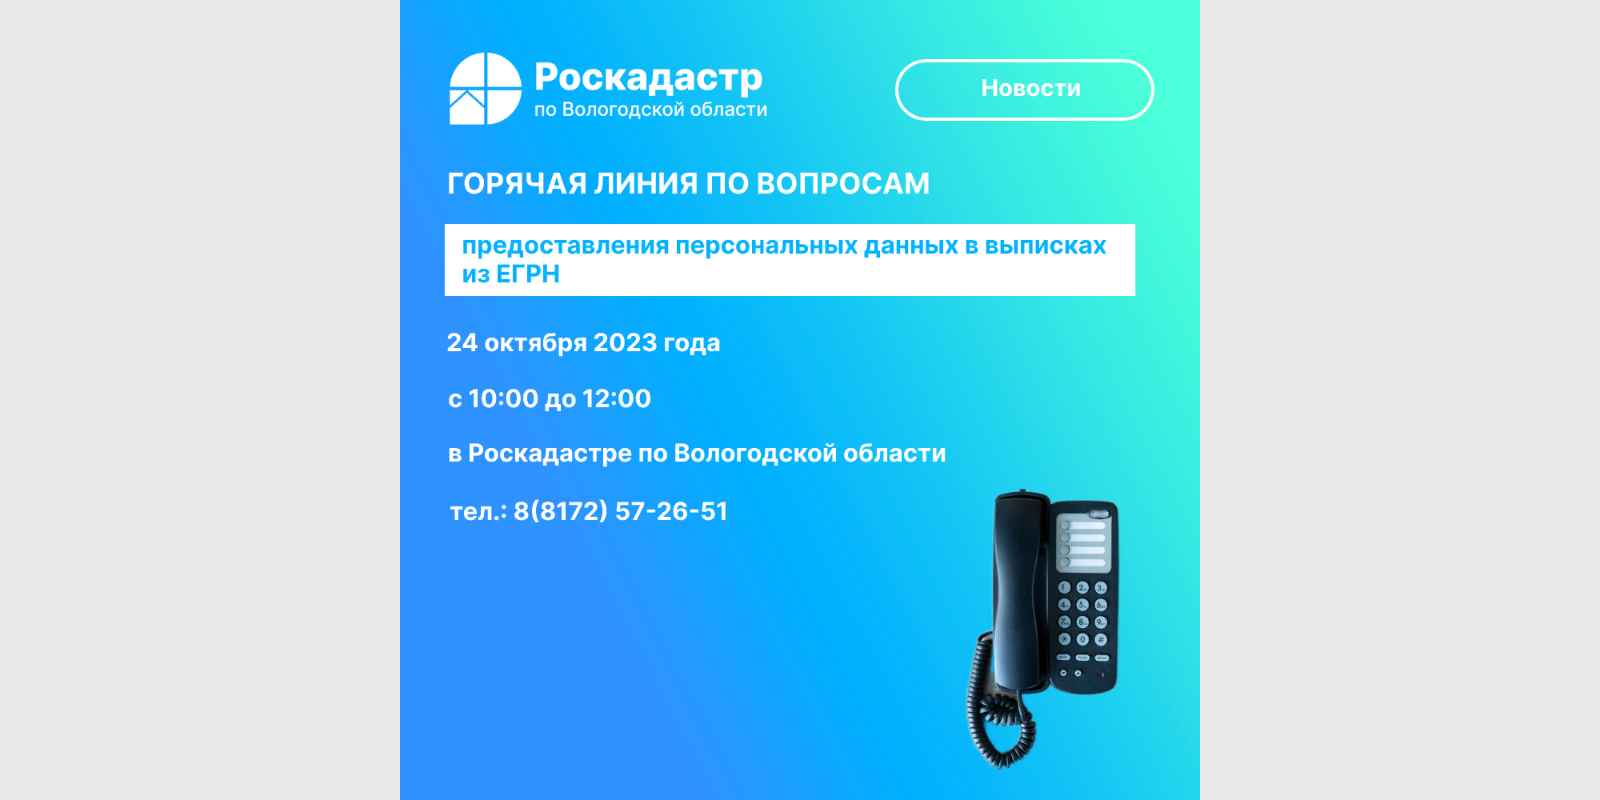 Роскадастр по Вологодской области проведет 24 октября «горячую» линию по вопросам предоставления персональных данных в выписках из ЕГРН.